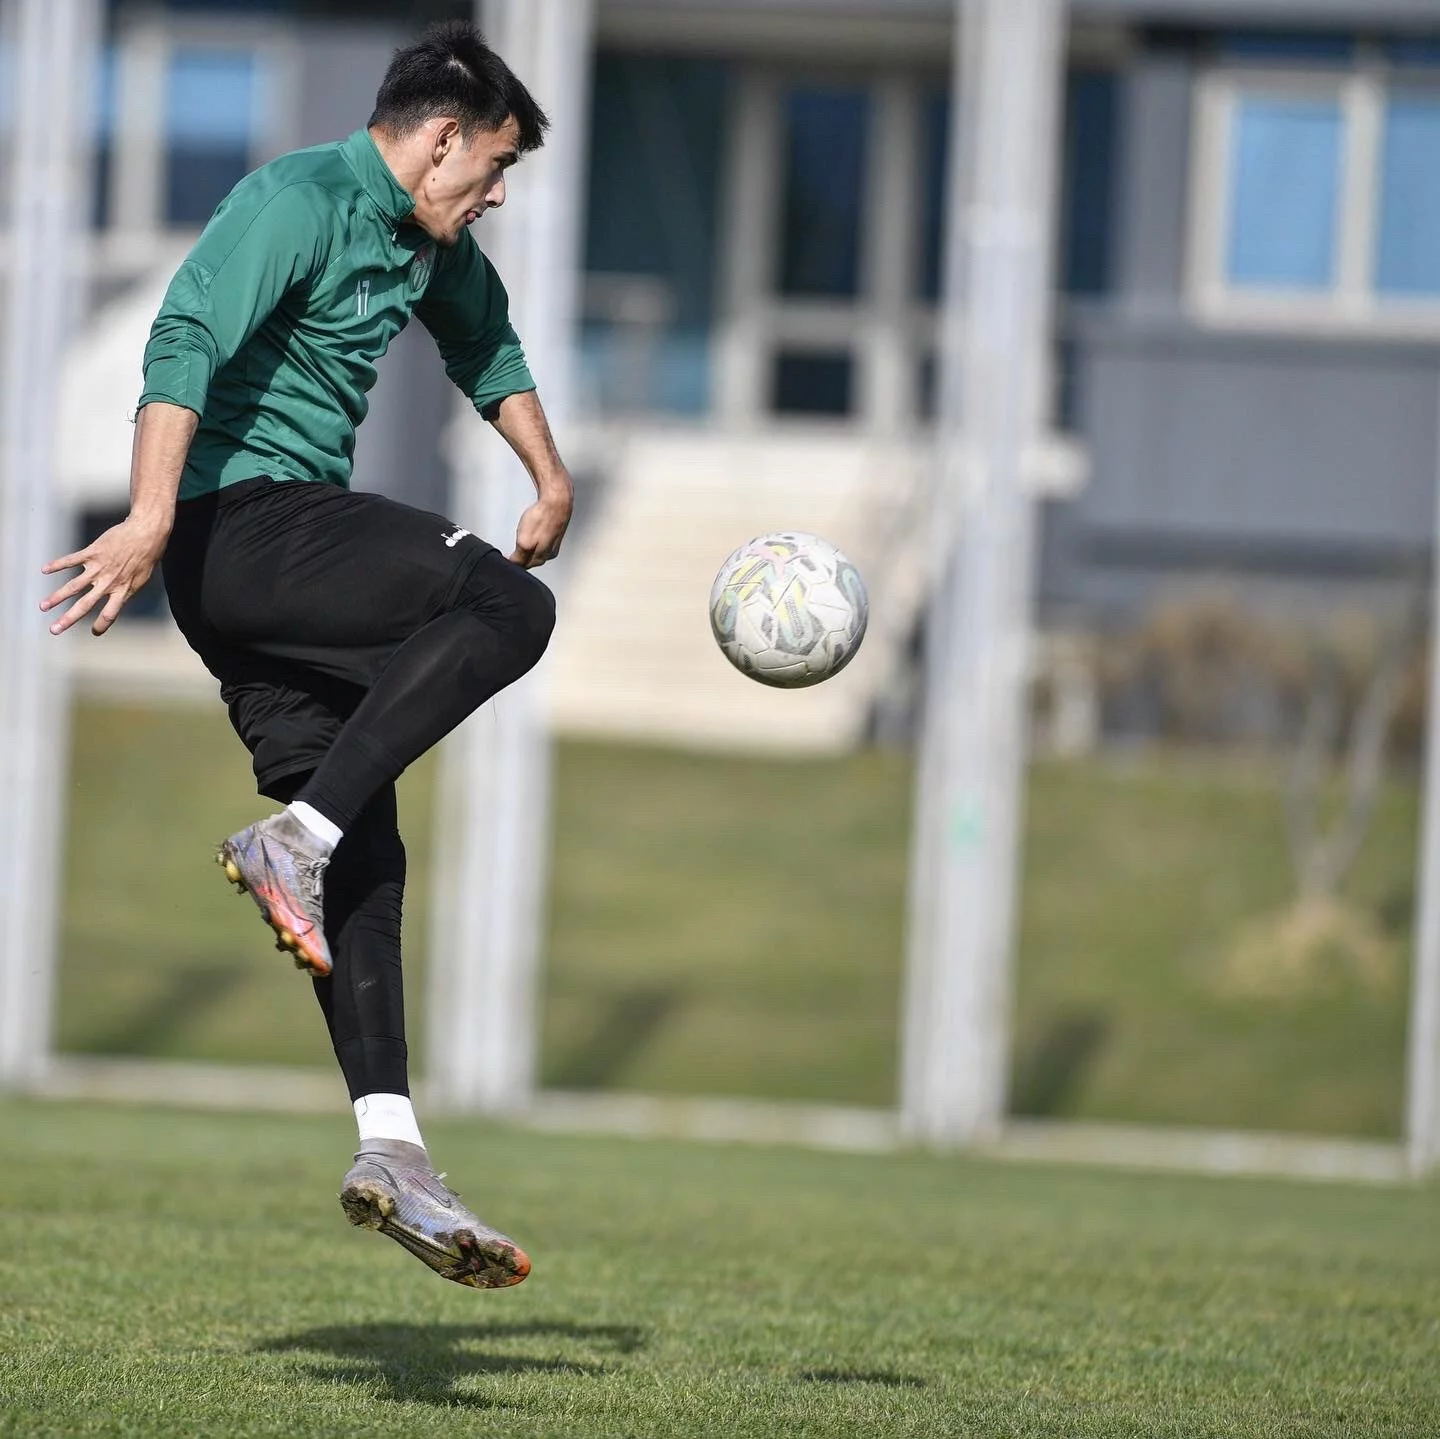 Bursasporda Afyonspor Maçı Hazırlıkları Devam Ediyor